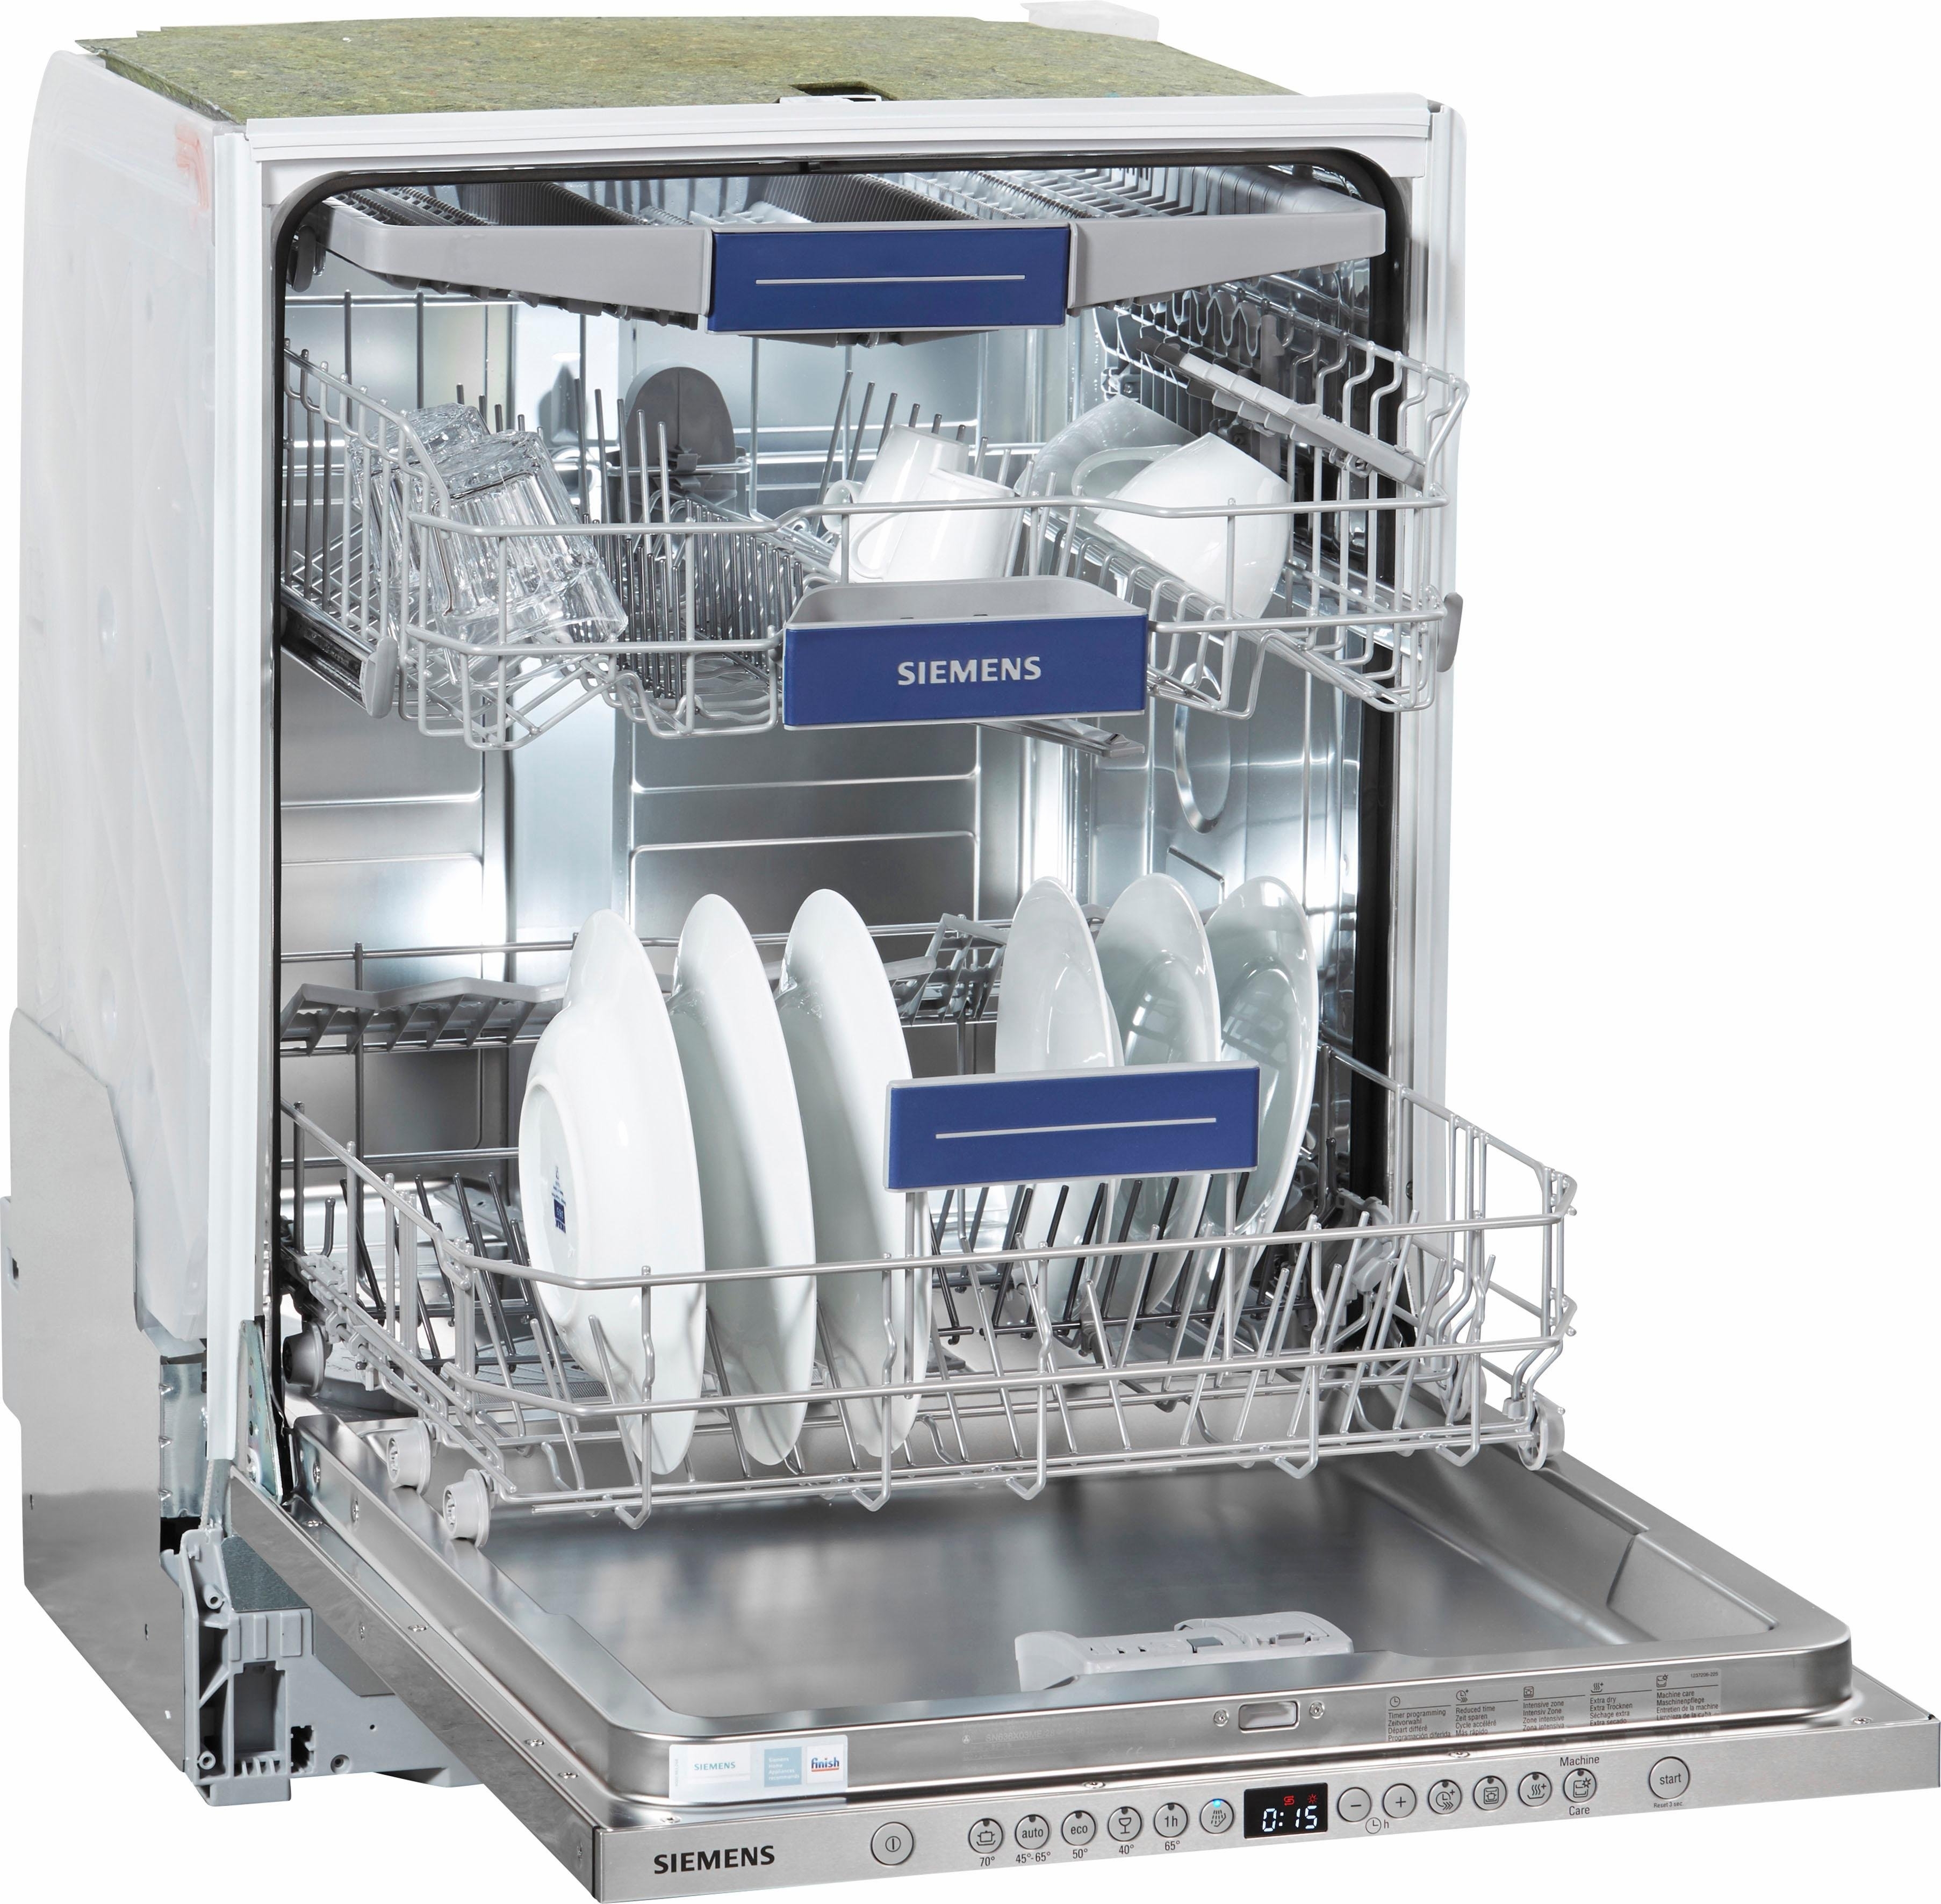 Посудомоечные машины встраиваемые фото. Посудомоечная машина Siemens SR 635x01 me. Siemens посудомоечная машина 45 см отдельностоящая. Посудомойка Сименс 45 см встраиваемая. Посудомоечная машина Siemens 45 встраиваемая.